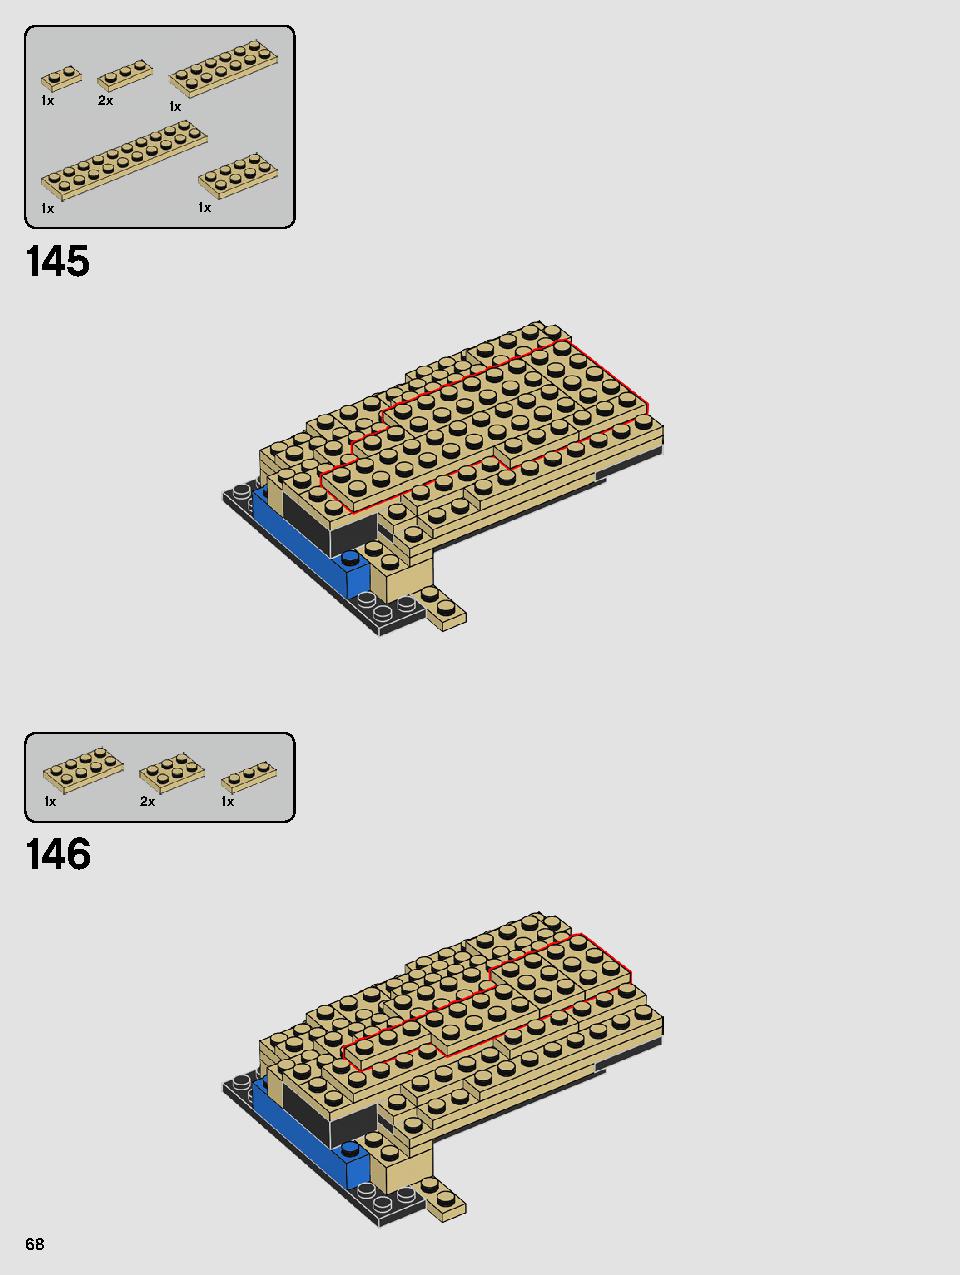 ヨーダ™ 75255 レゴの商品情報 レゴの説明書・組立方法 68 page